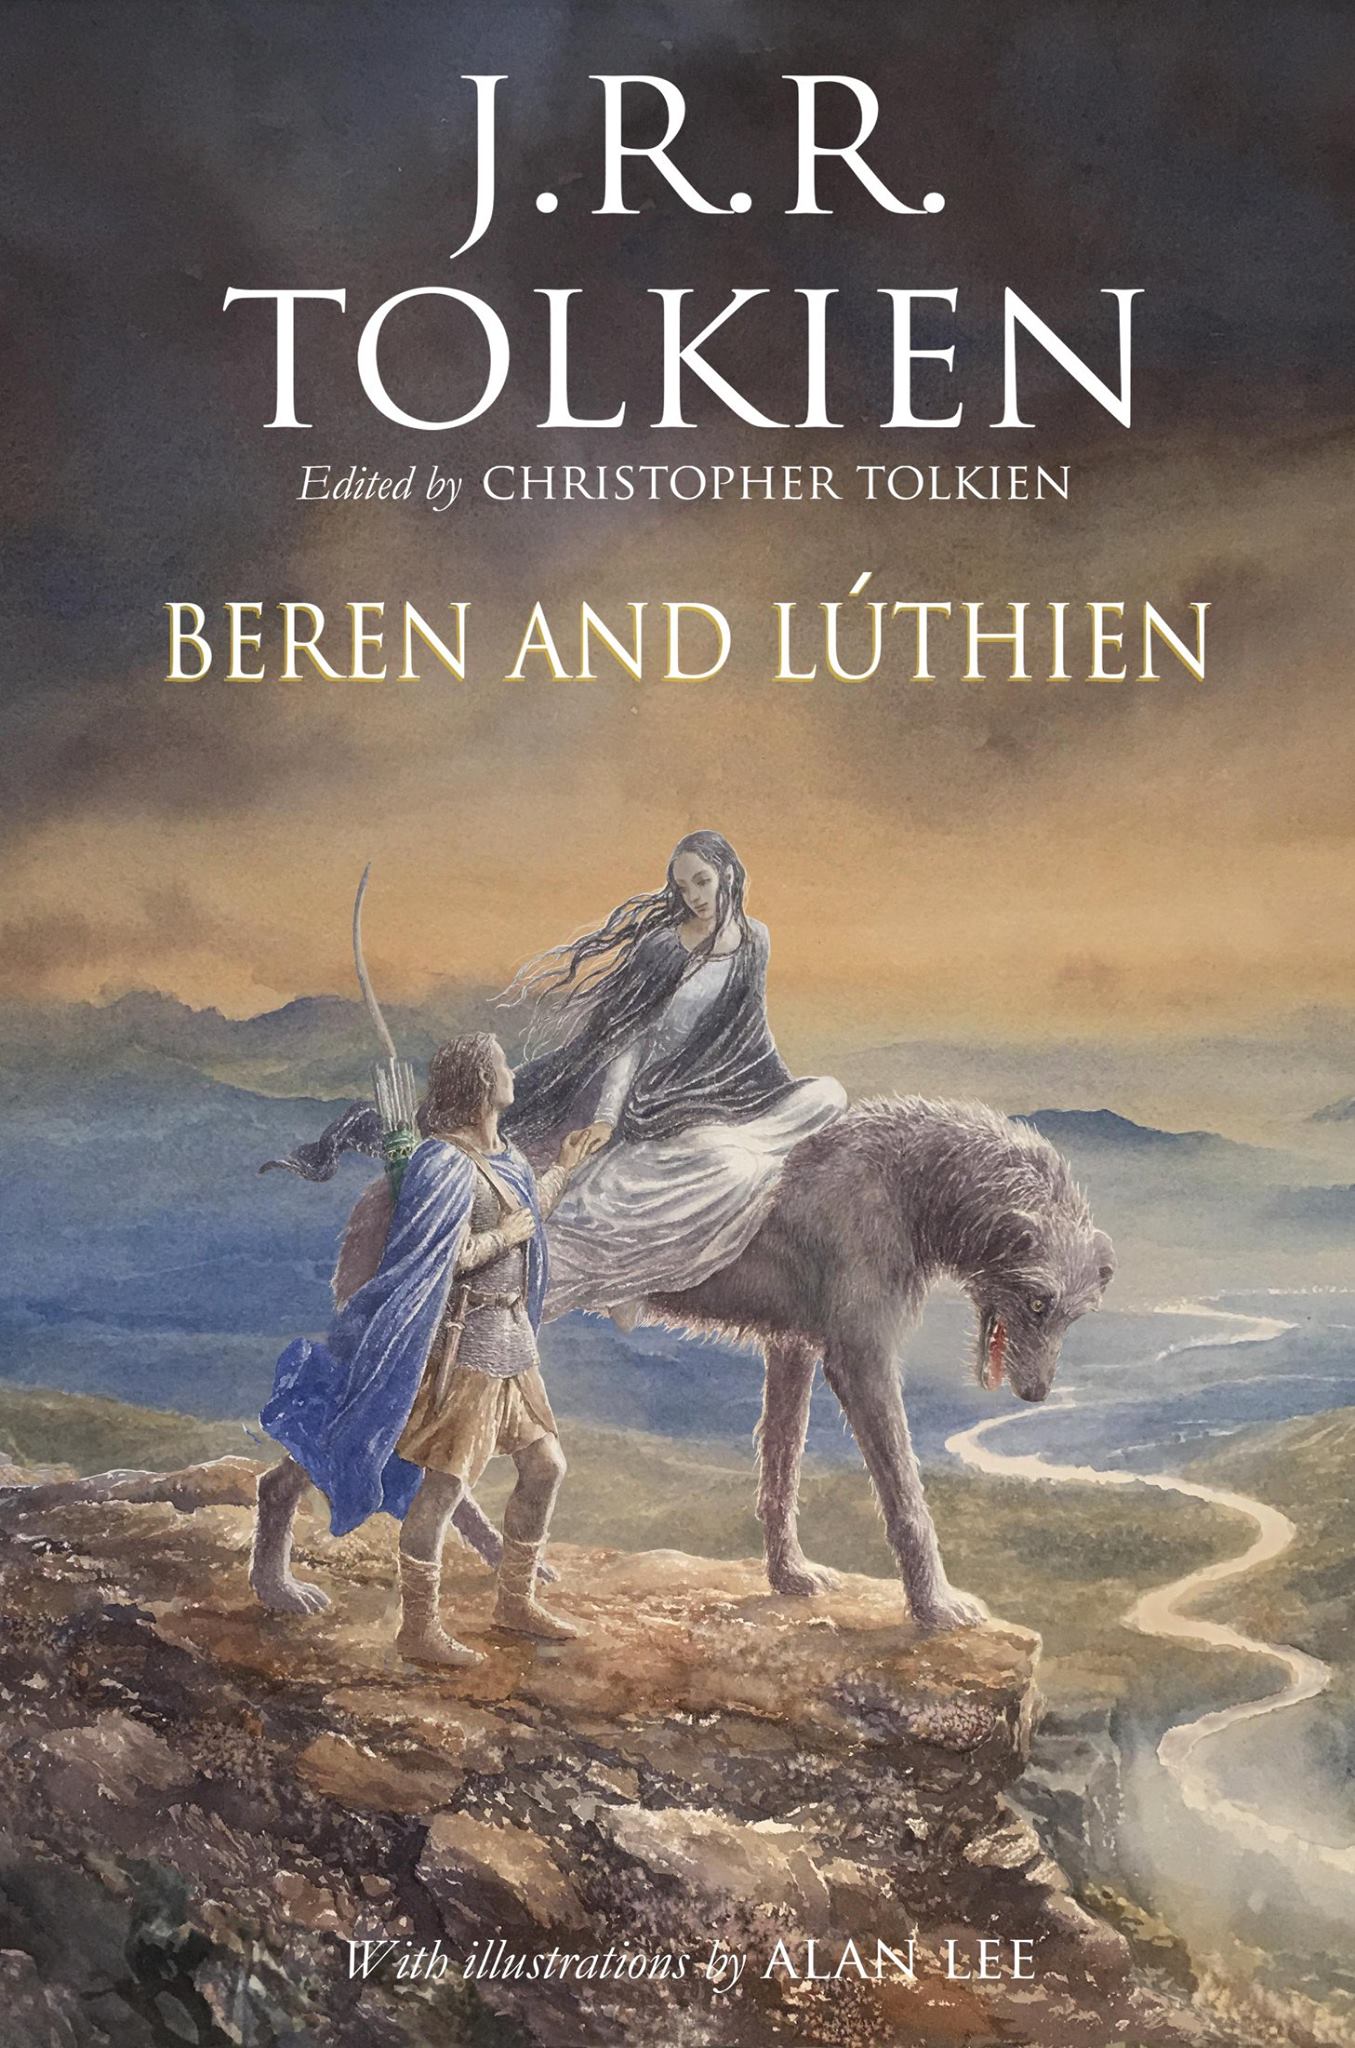 Tolkien szerelmes meséje